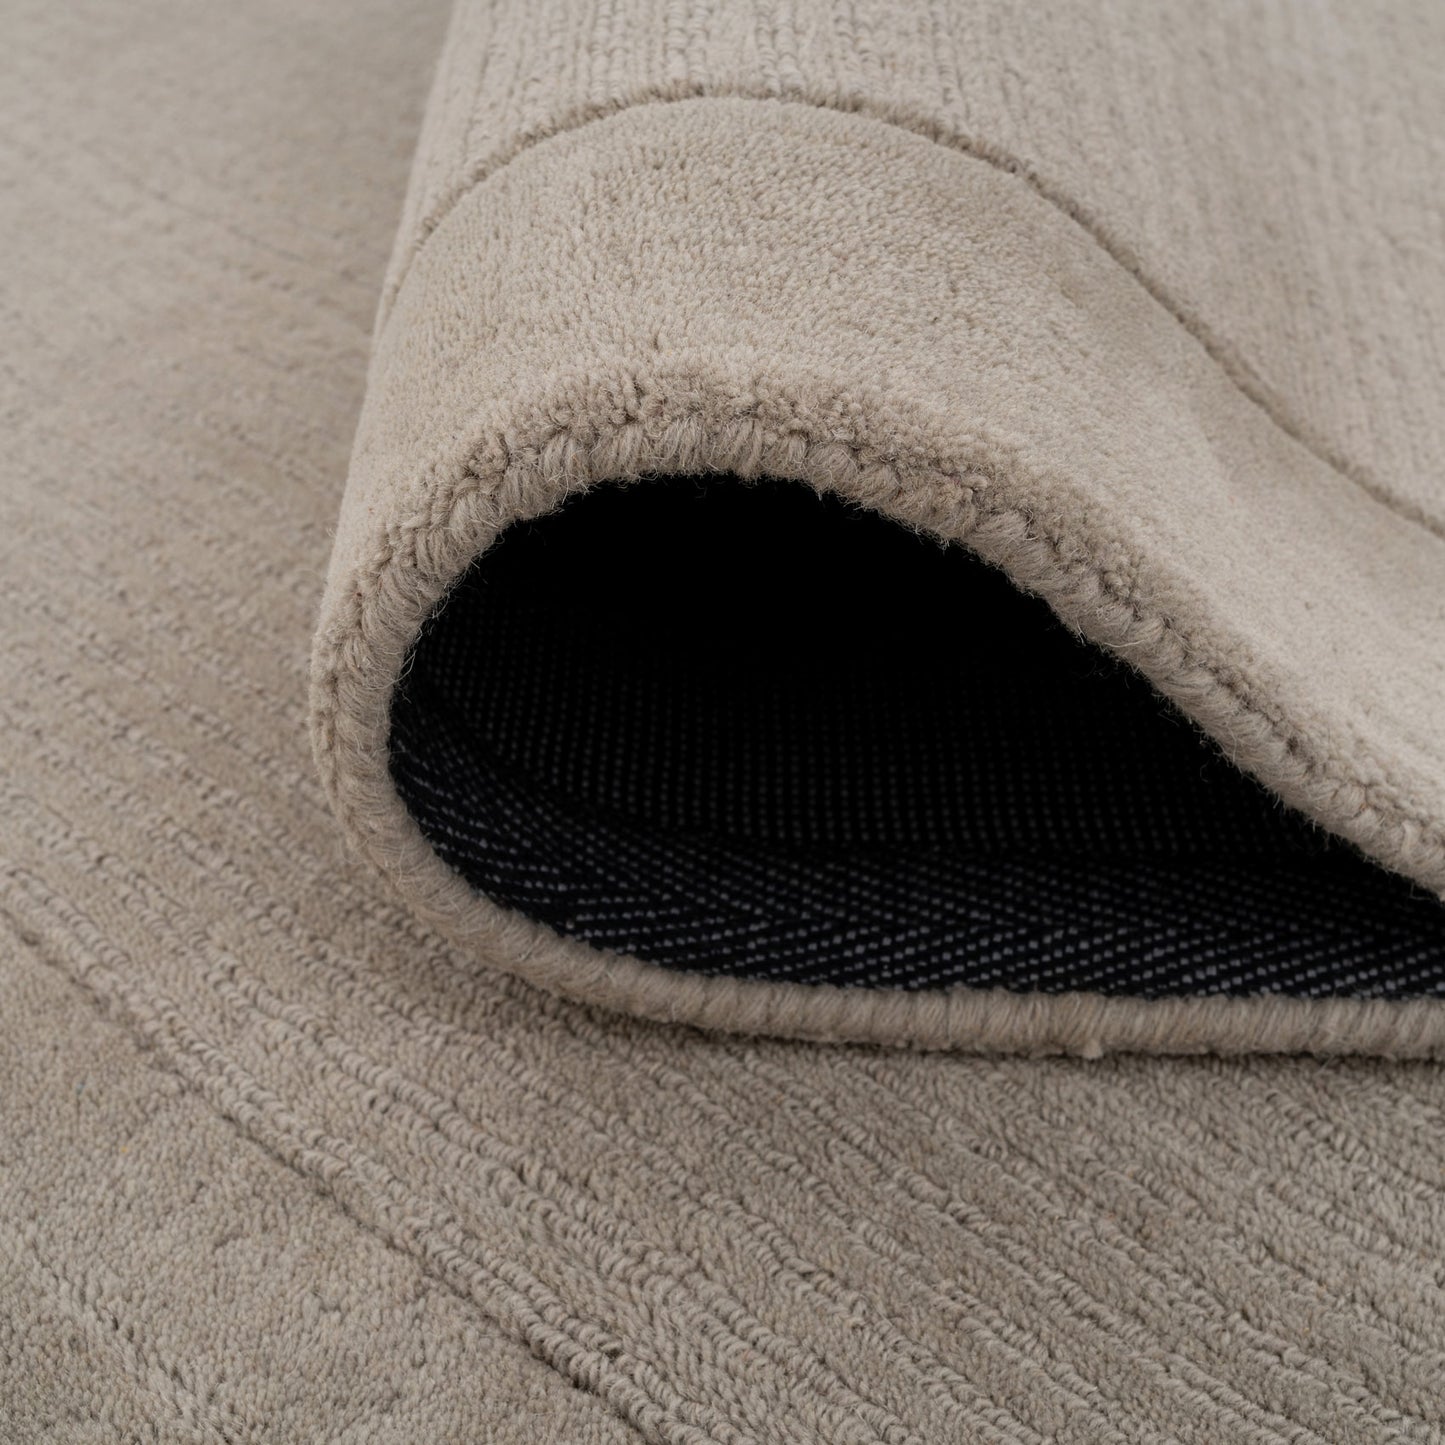 Grey Bordered Wool Rug - Olann Grey